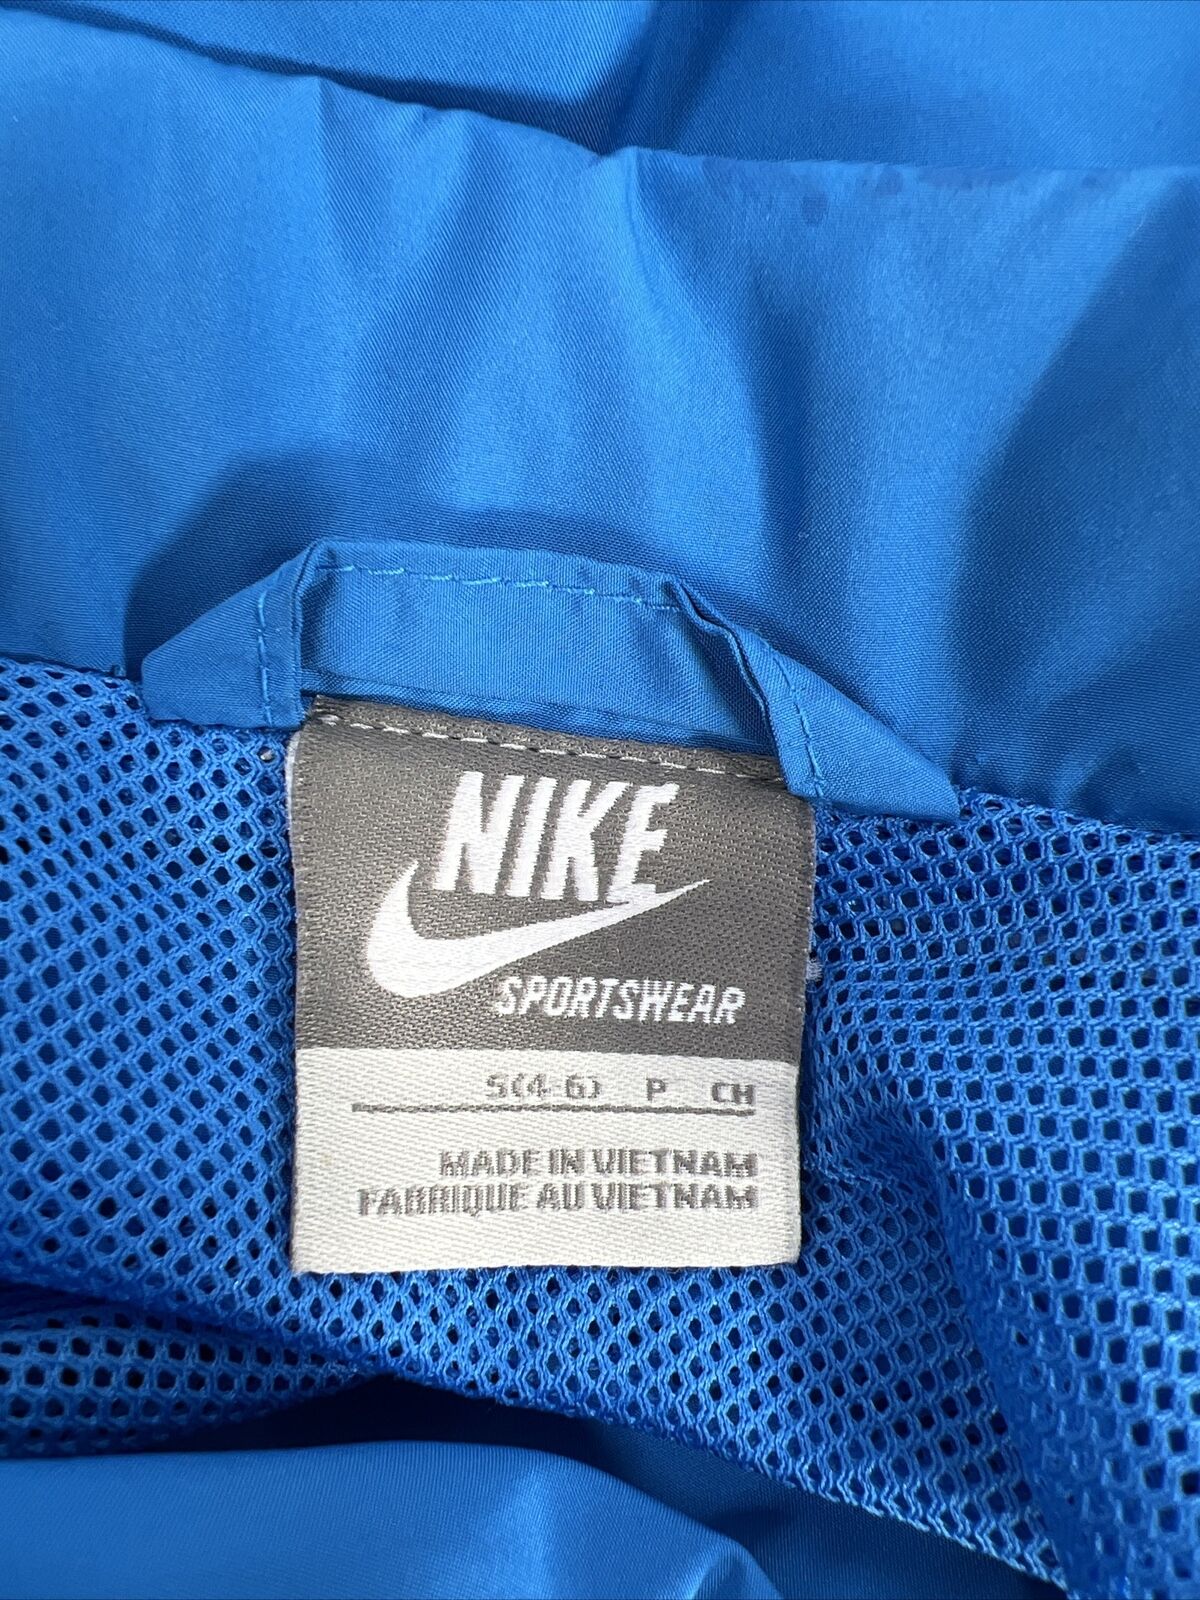 Nike Sportswear Women's Blue Full Zip Windbreaker Jacket - S